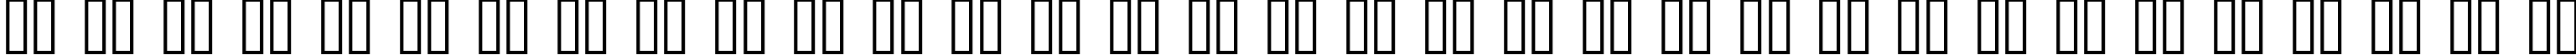 Пример написания русского алфавита шрифтом Transformers Solid  Normal